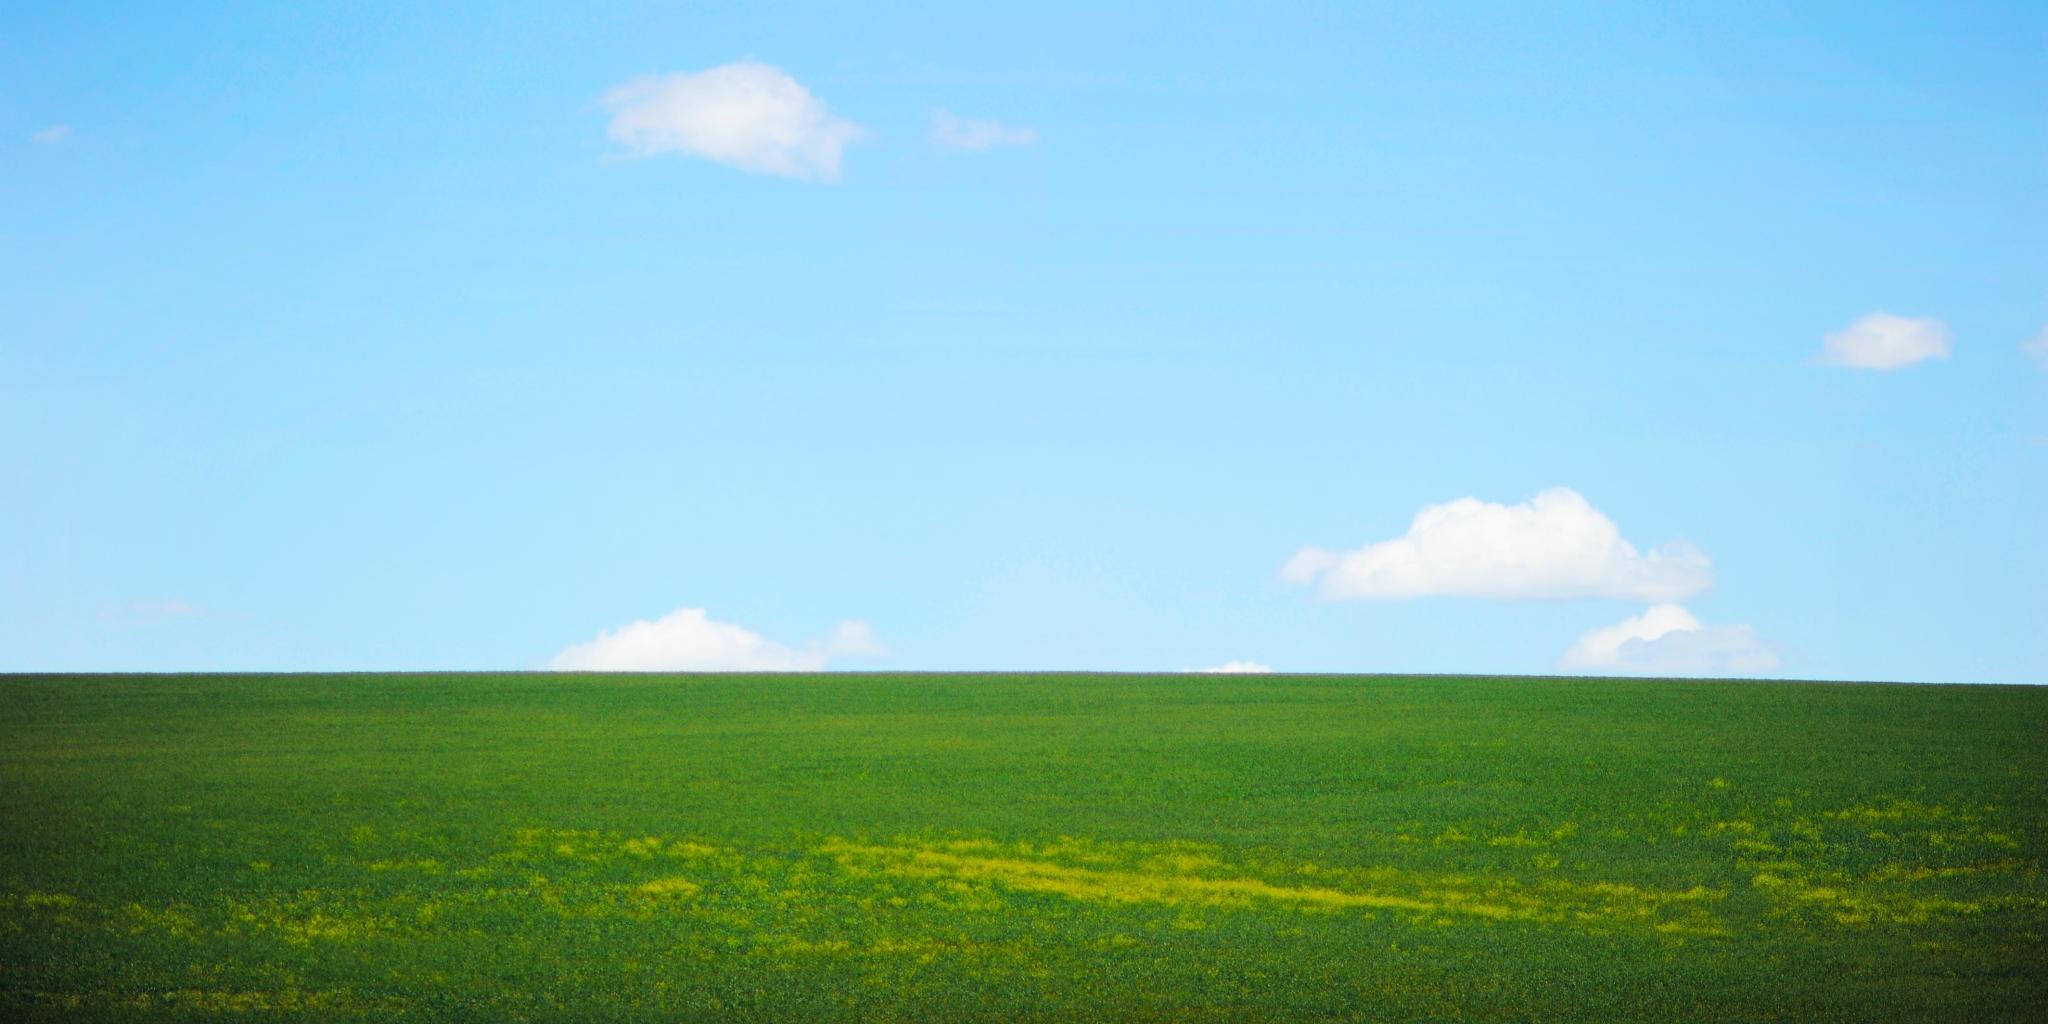 grünes Gras trifft am Horizont auf strahlend blauen Himmel; vereinzelt sind kleine Wölkchen zu sehen